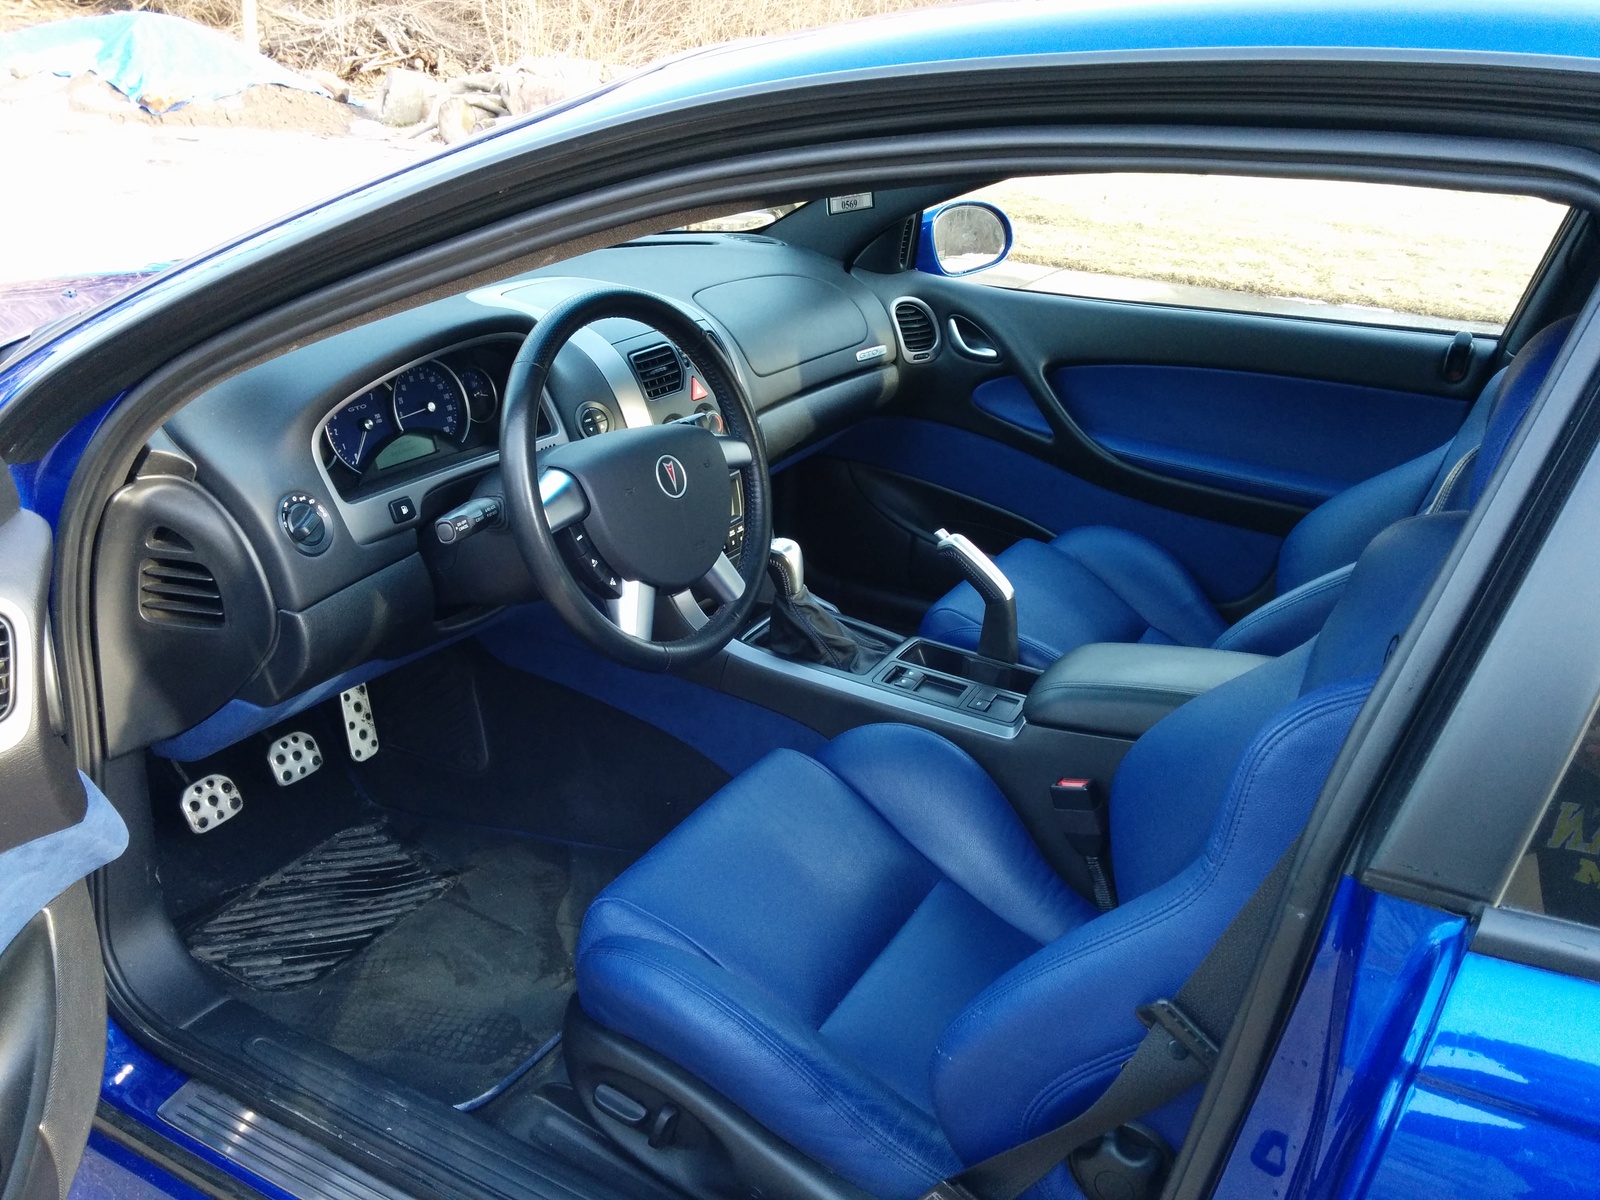 2004 Pontiac GTO - Pictures - CarGurus